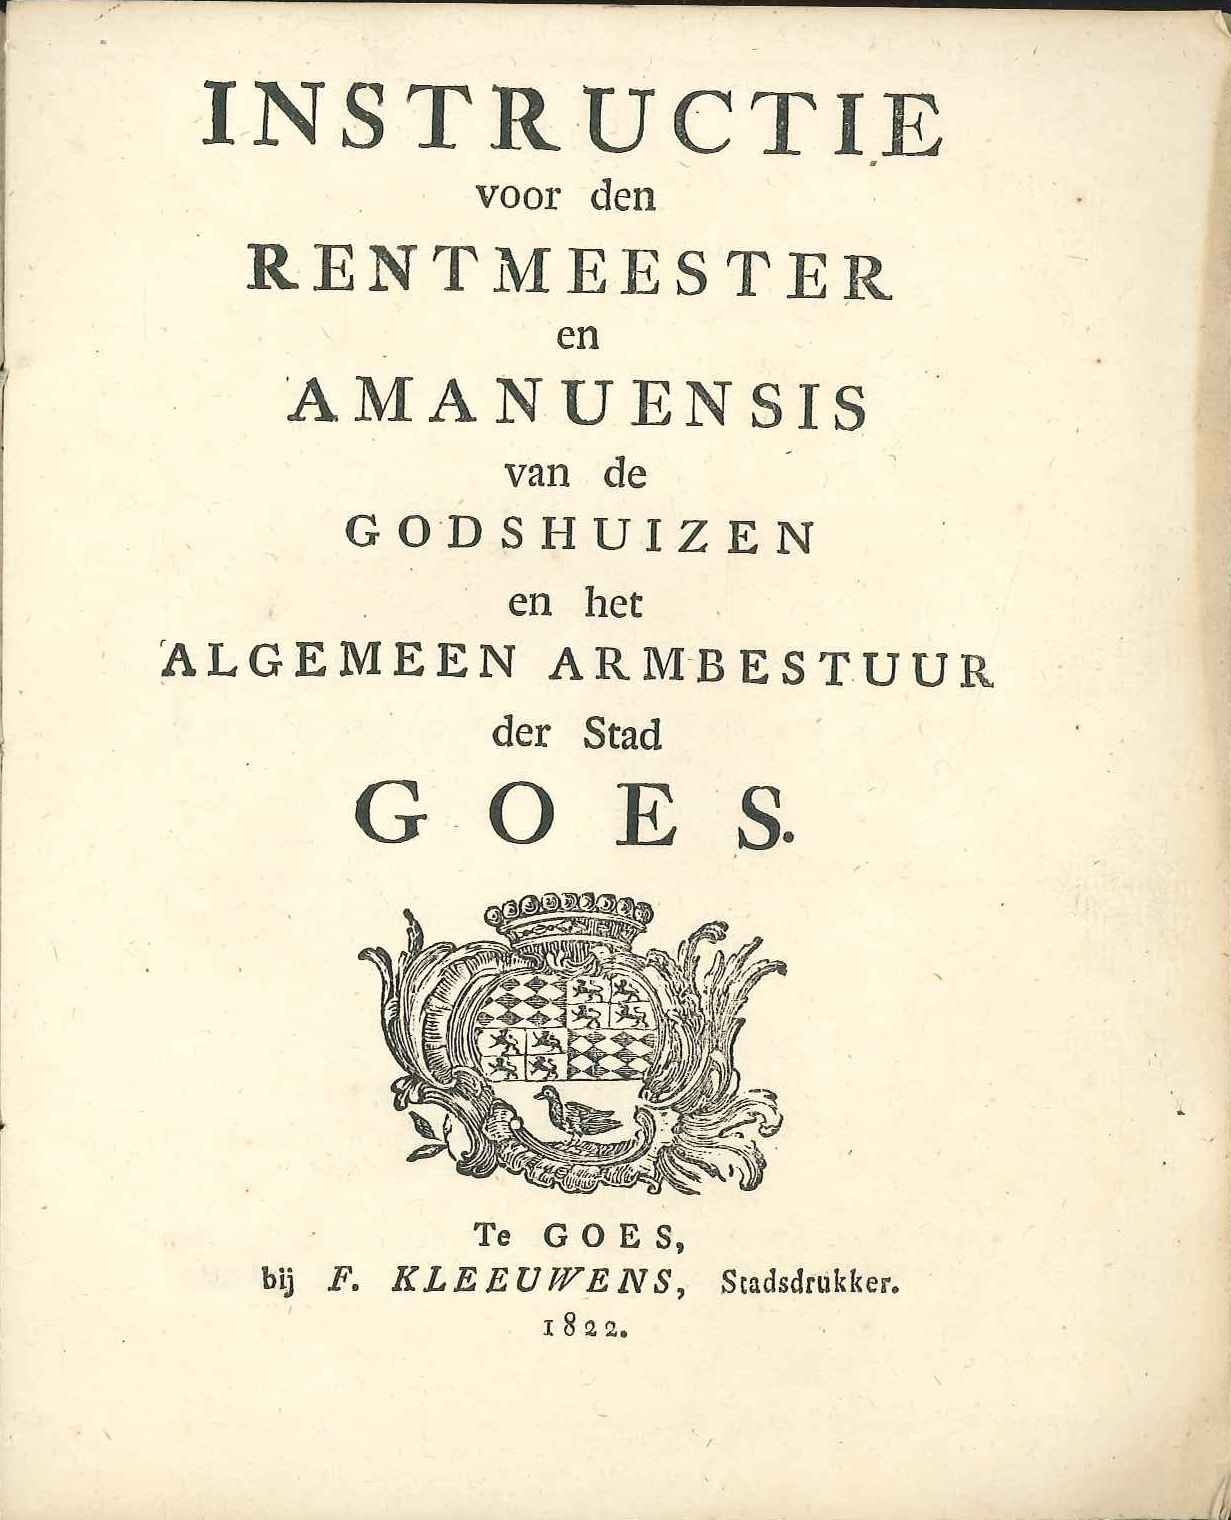 Instructie voor de rentmeester en amanuensis van het armbestuur, 1822. GAG.ASG.inv.nr. 2803.